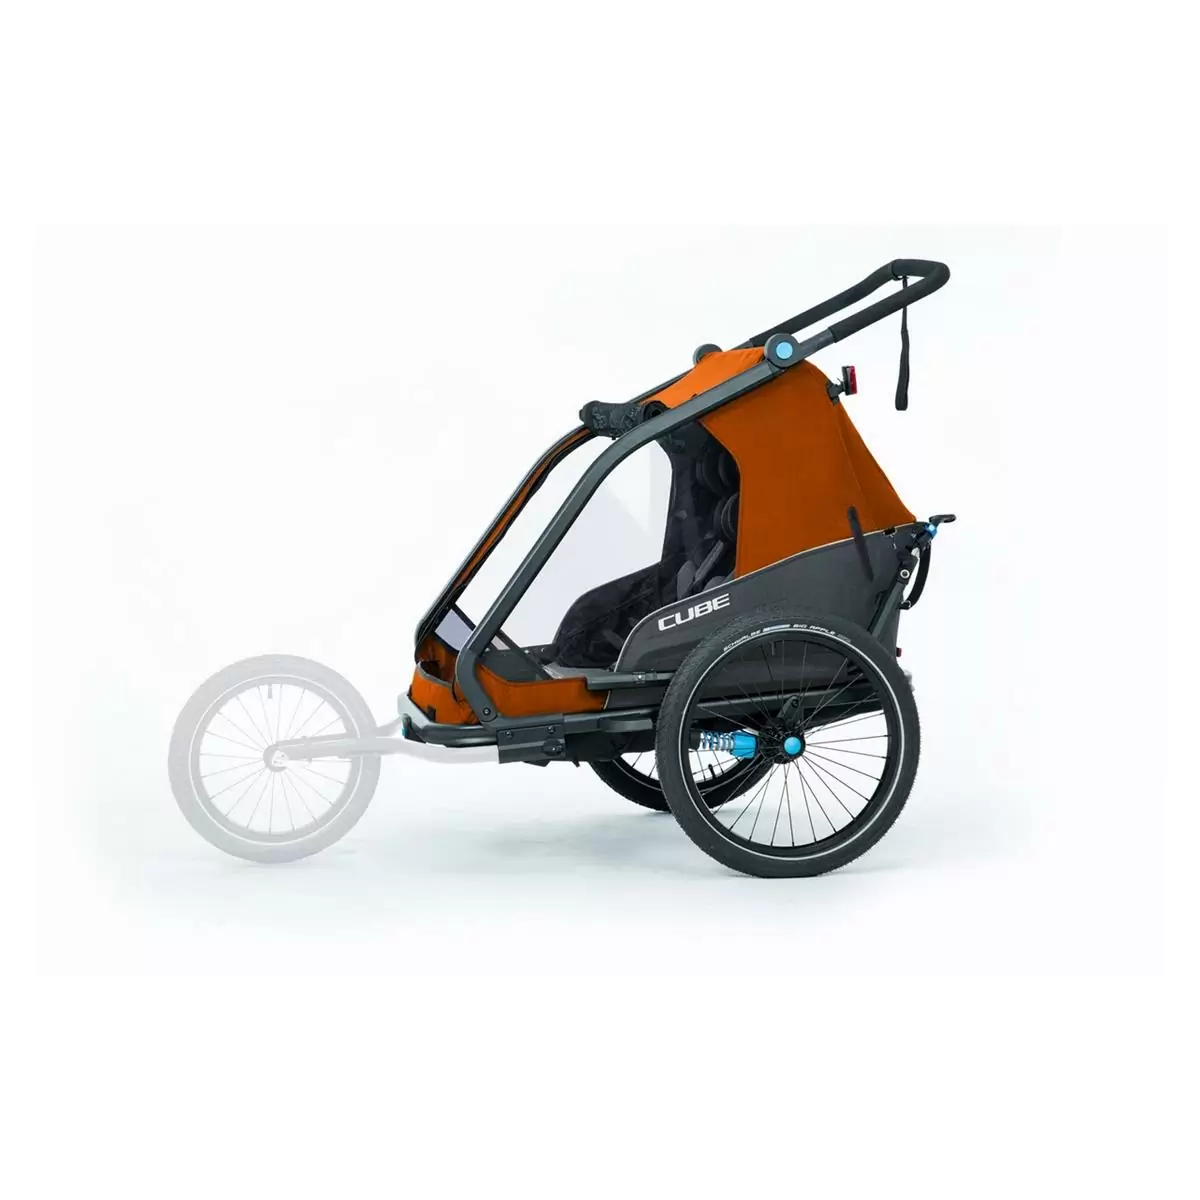 Cube 12846 remolque bici infantil para ninos doble cmpt x actionteam